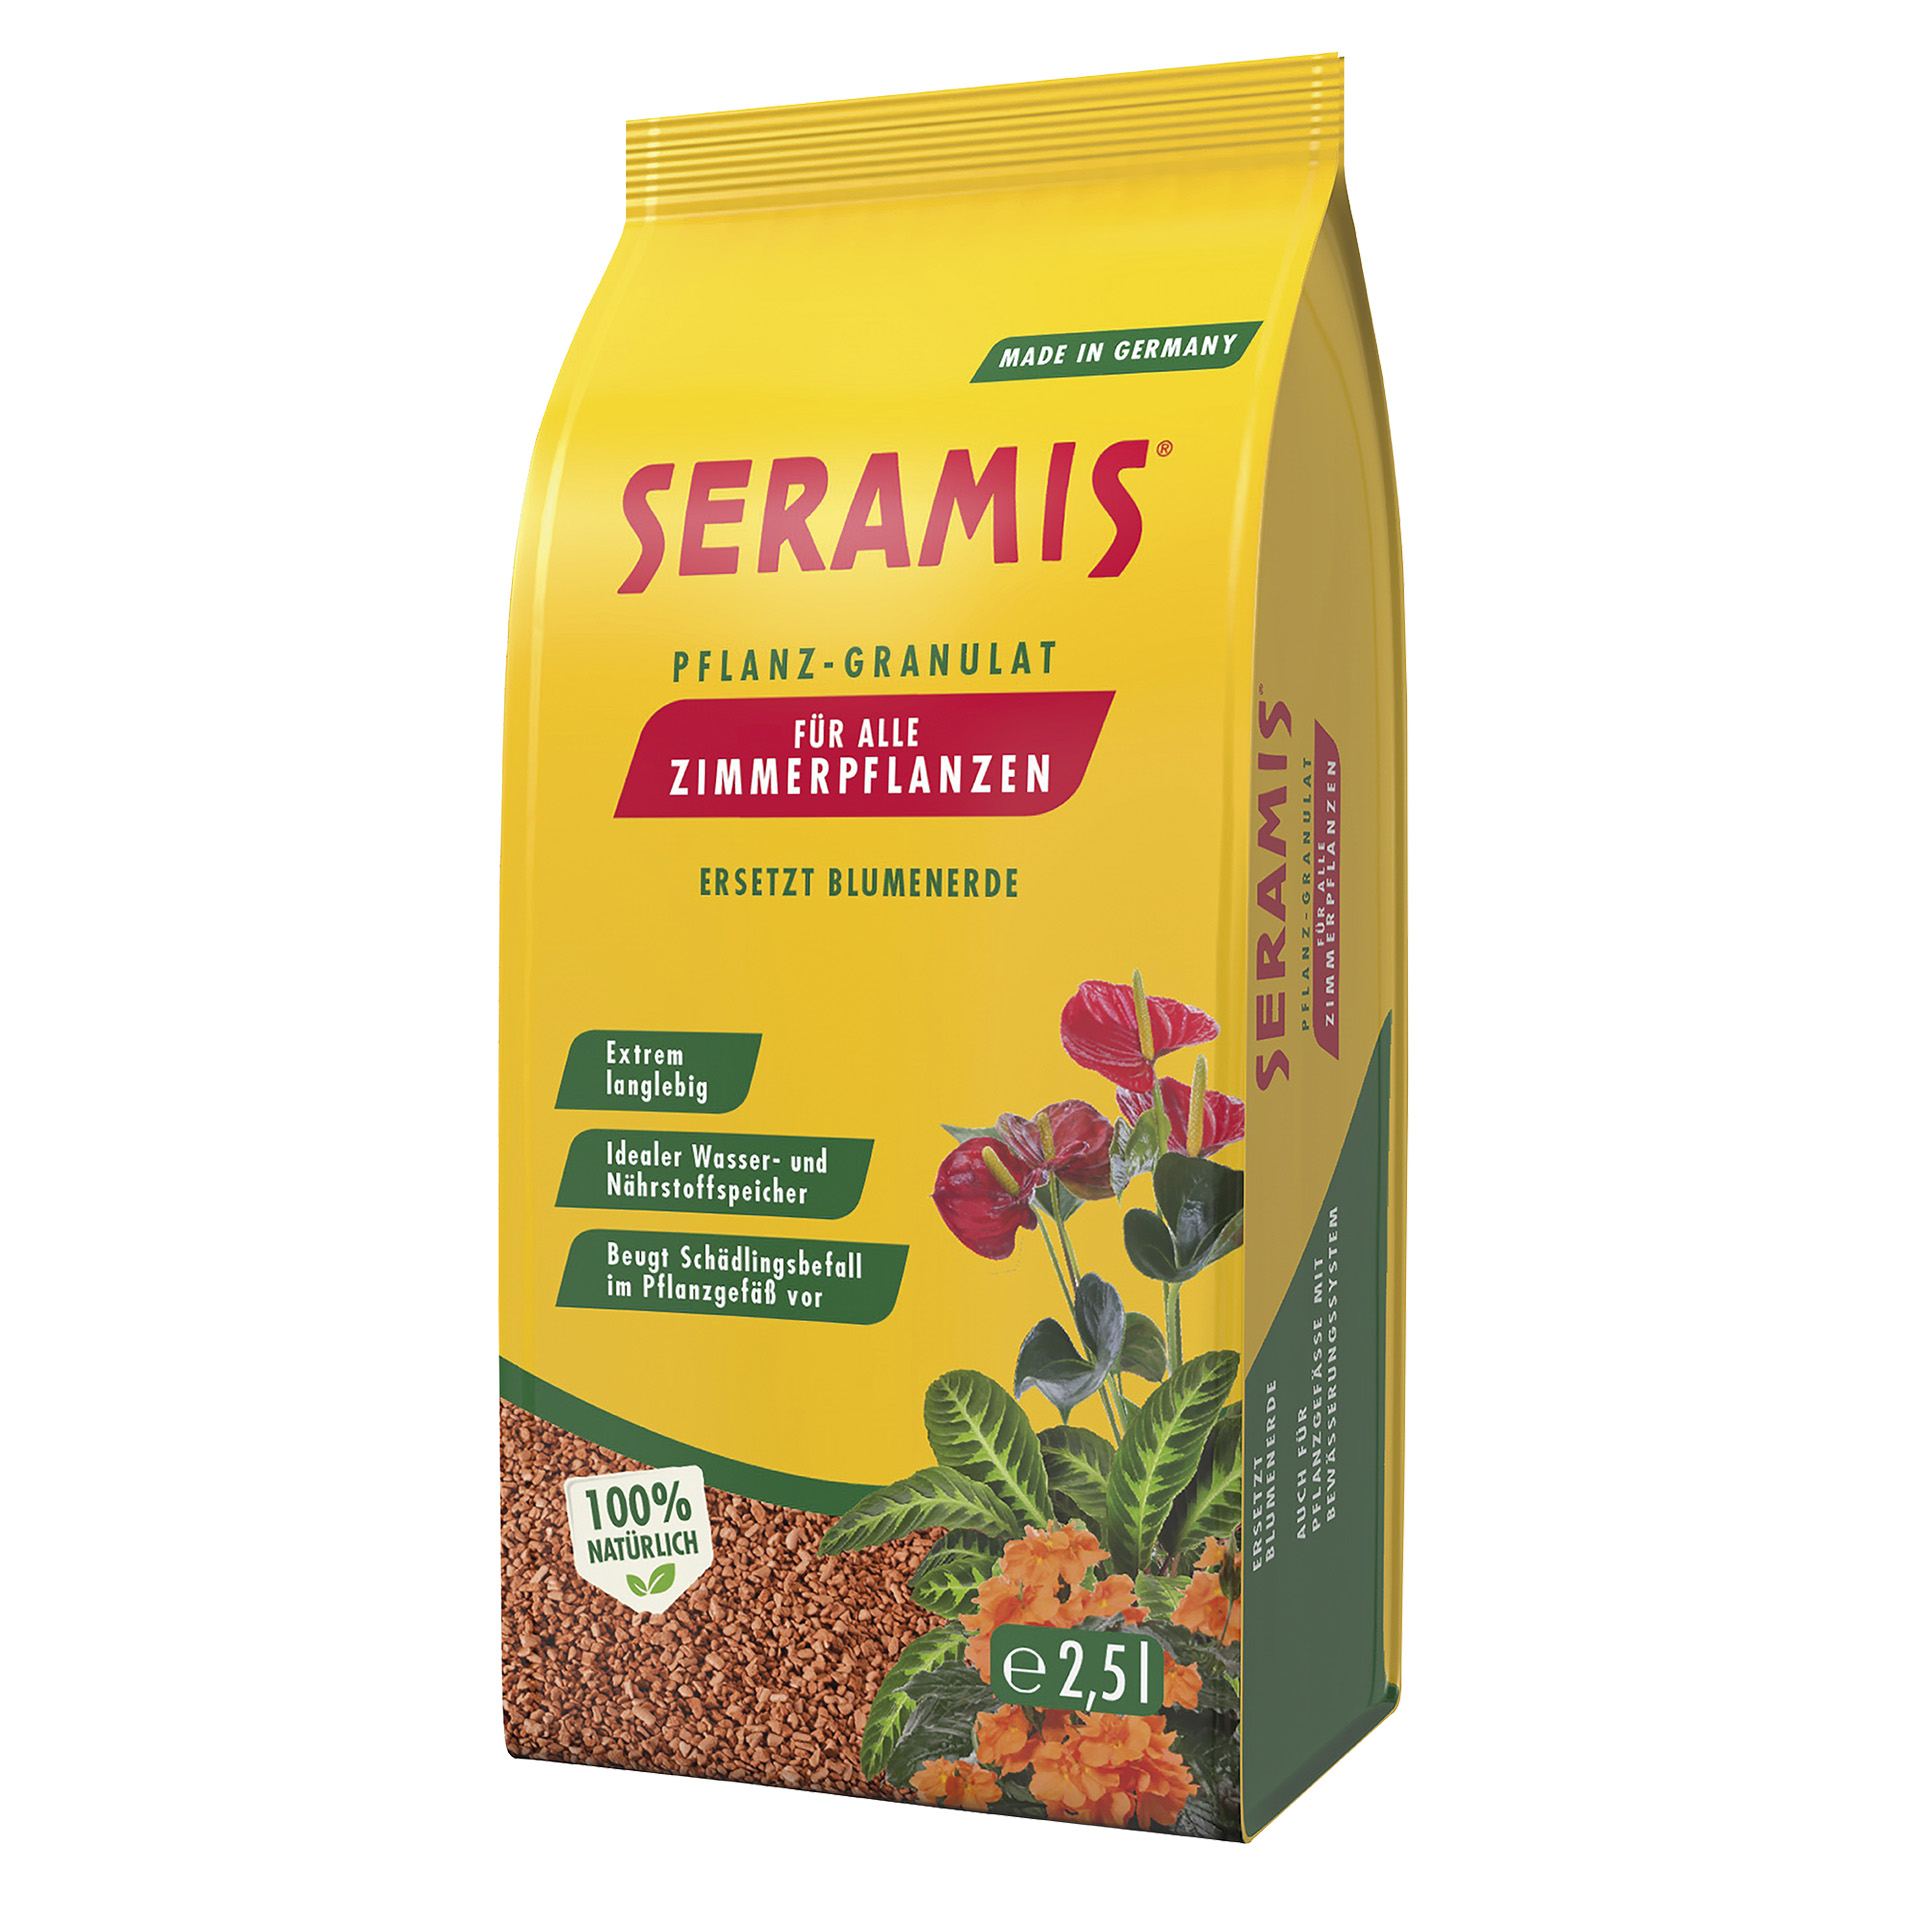 Seramis® Pflanz-Granulat für Zimmerpflanzen